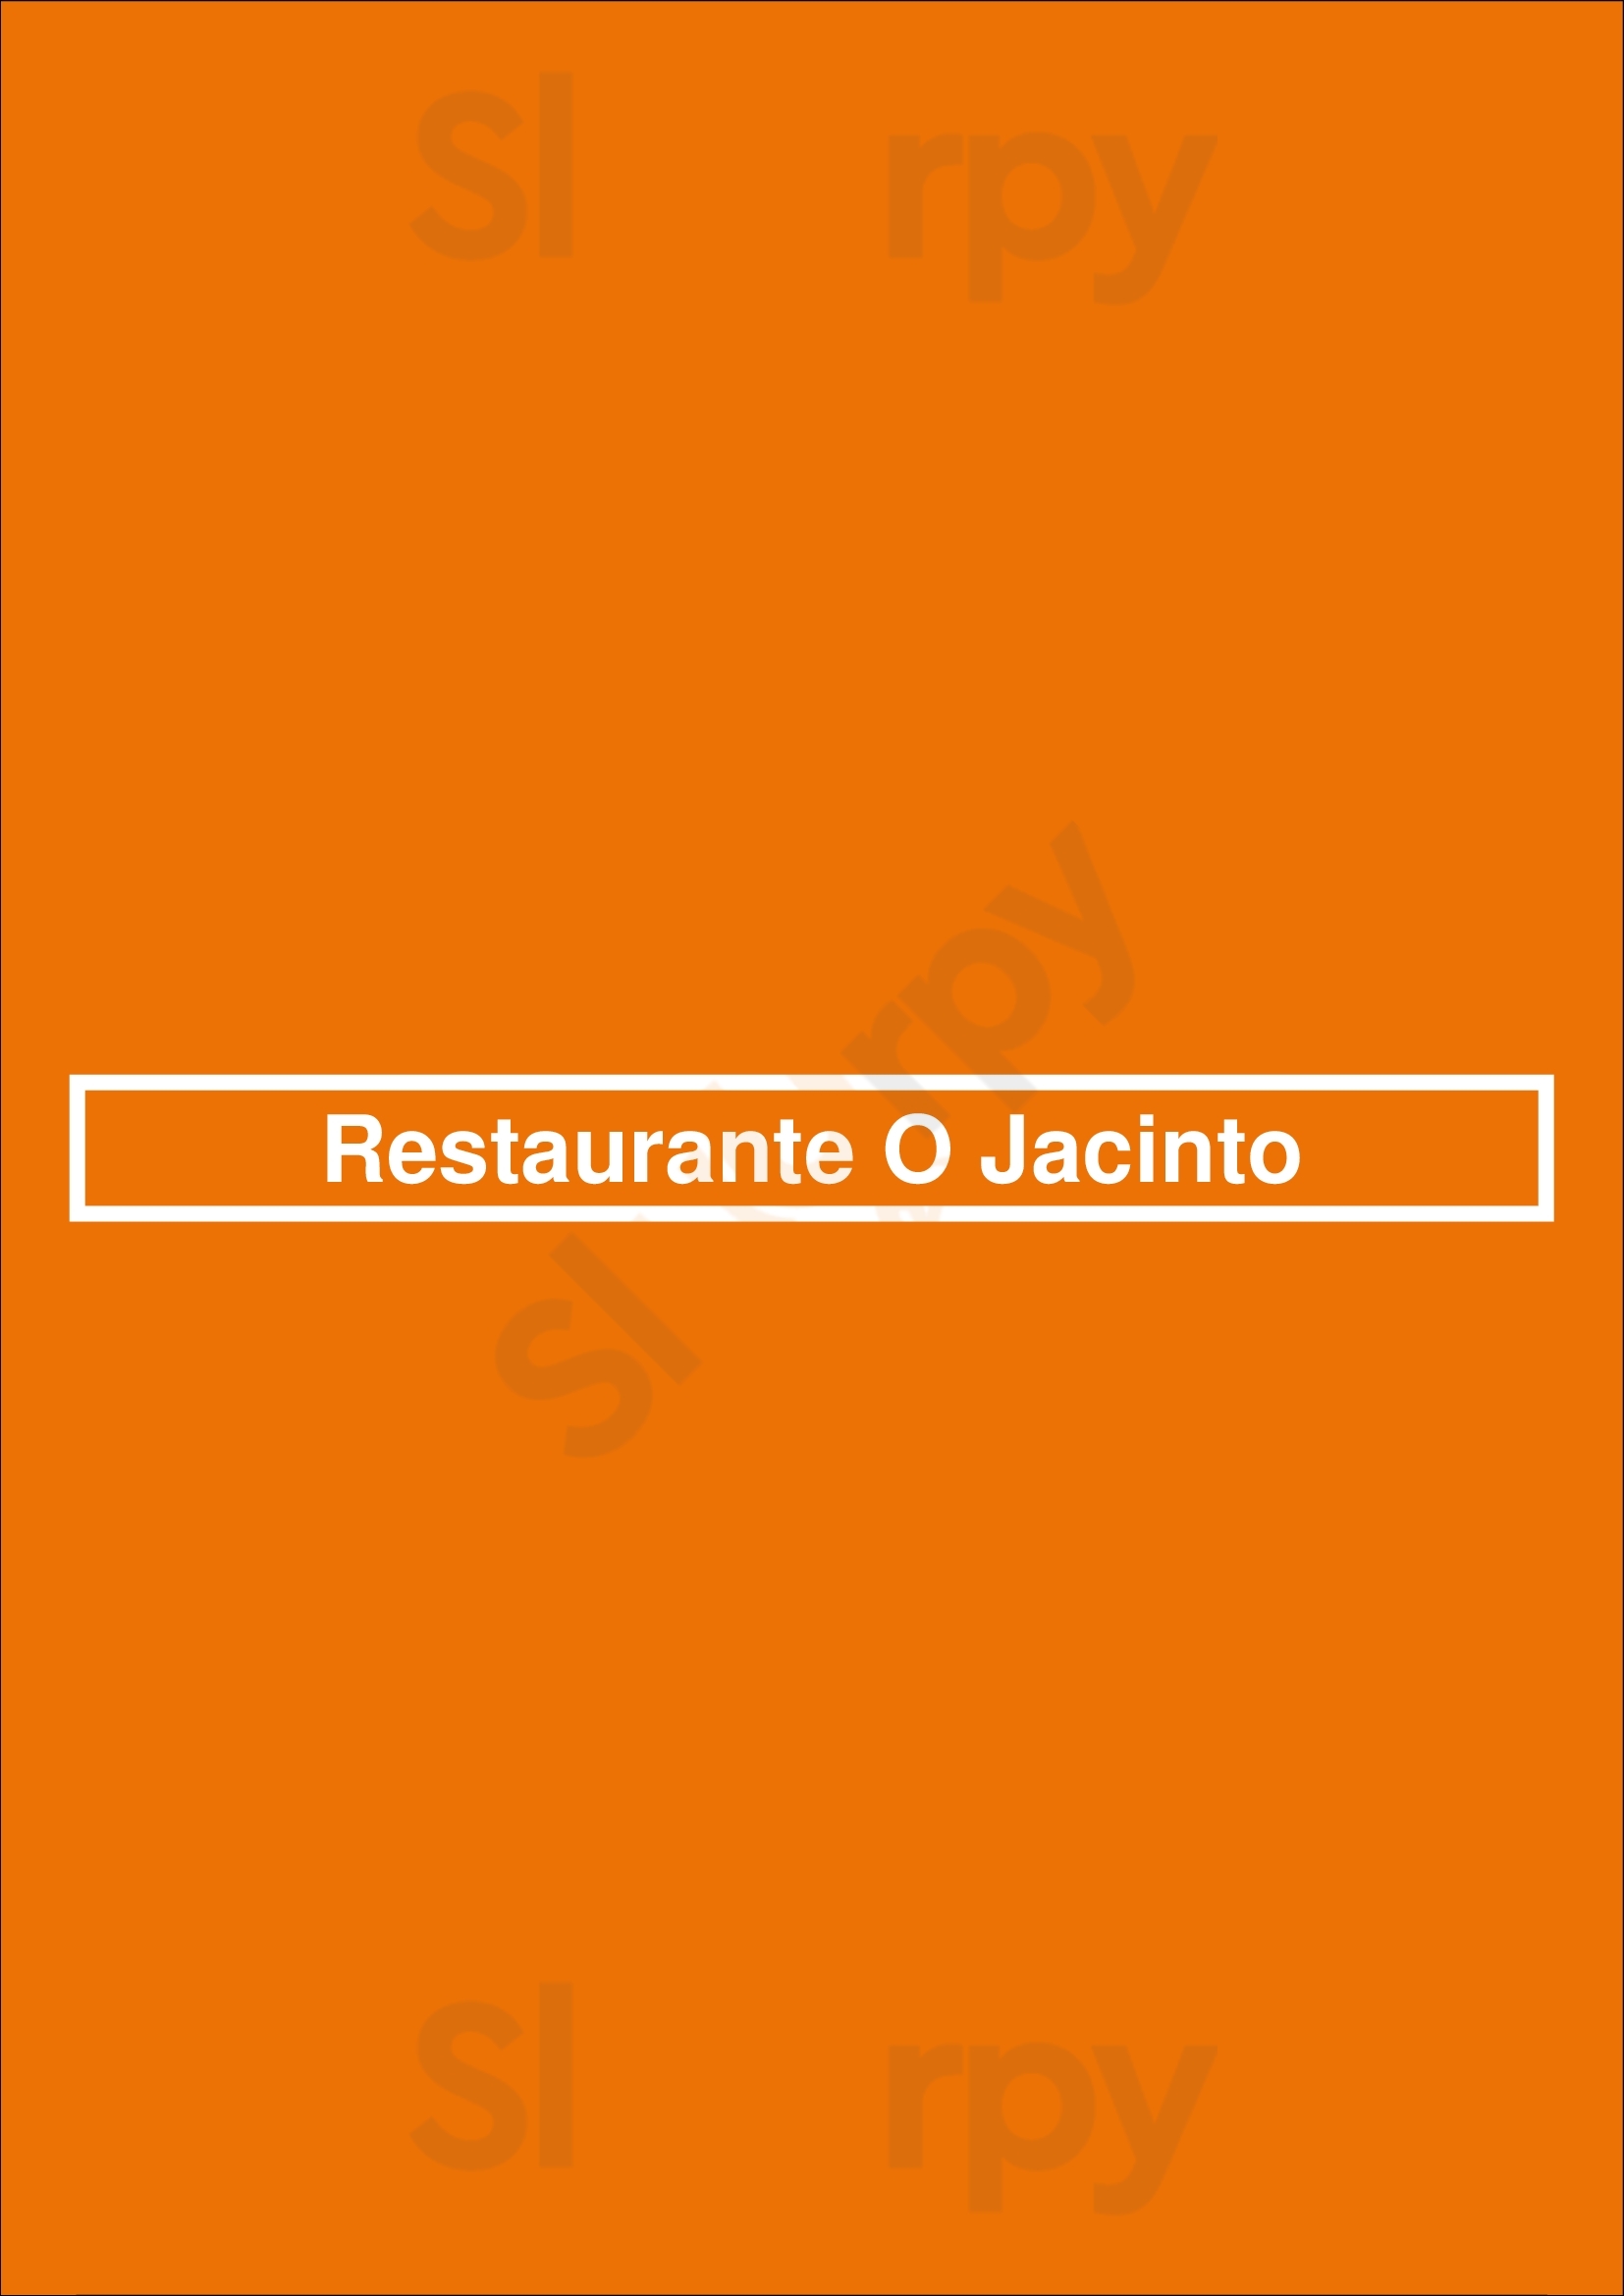 Jacinto Lisboa Lisboa Menu - 1